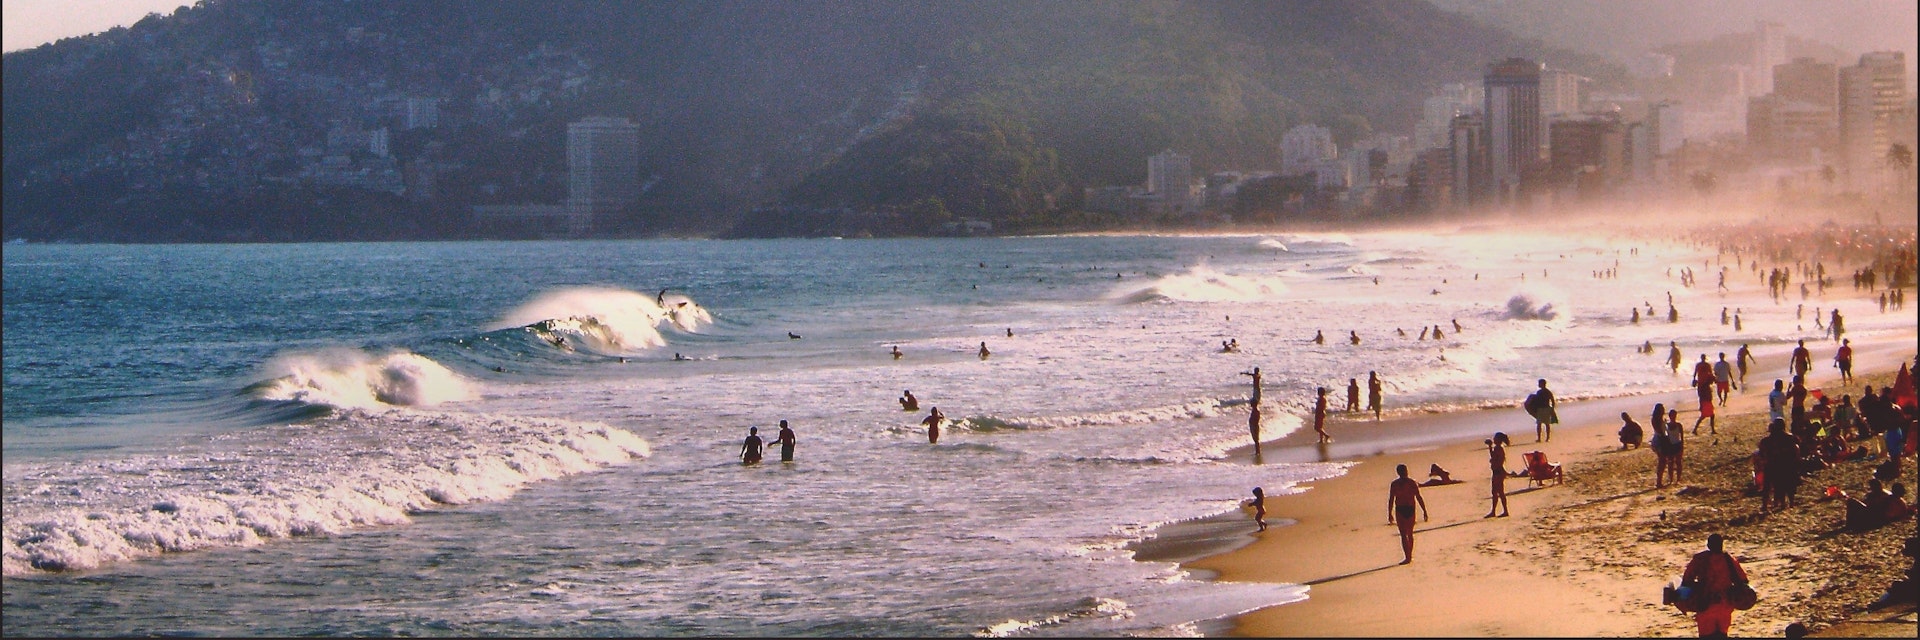 Lpanema beach